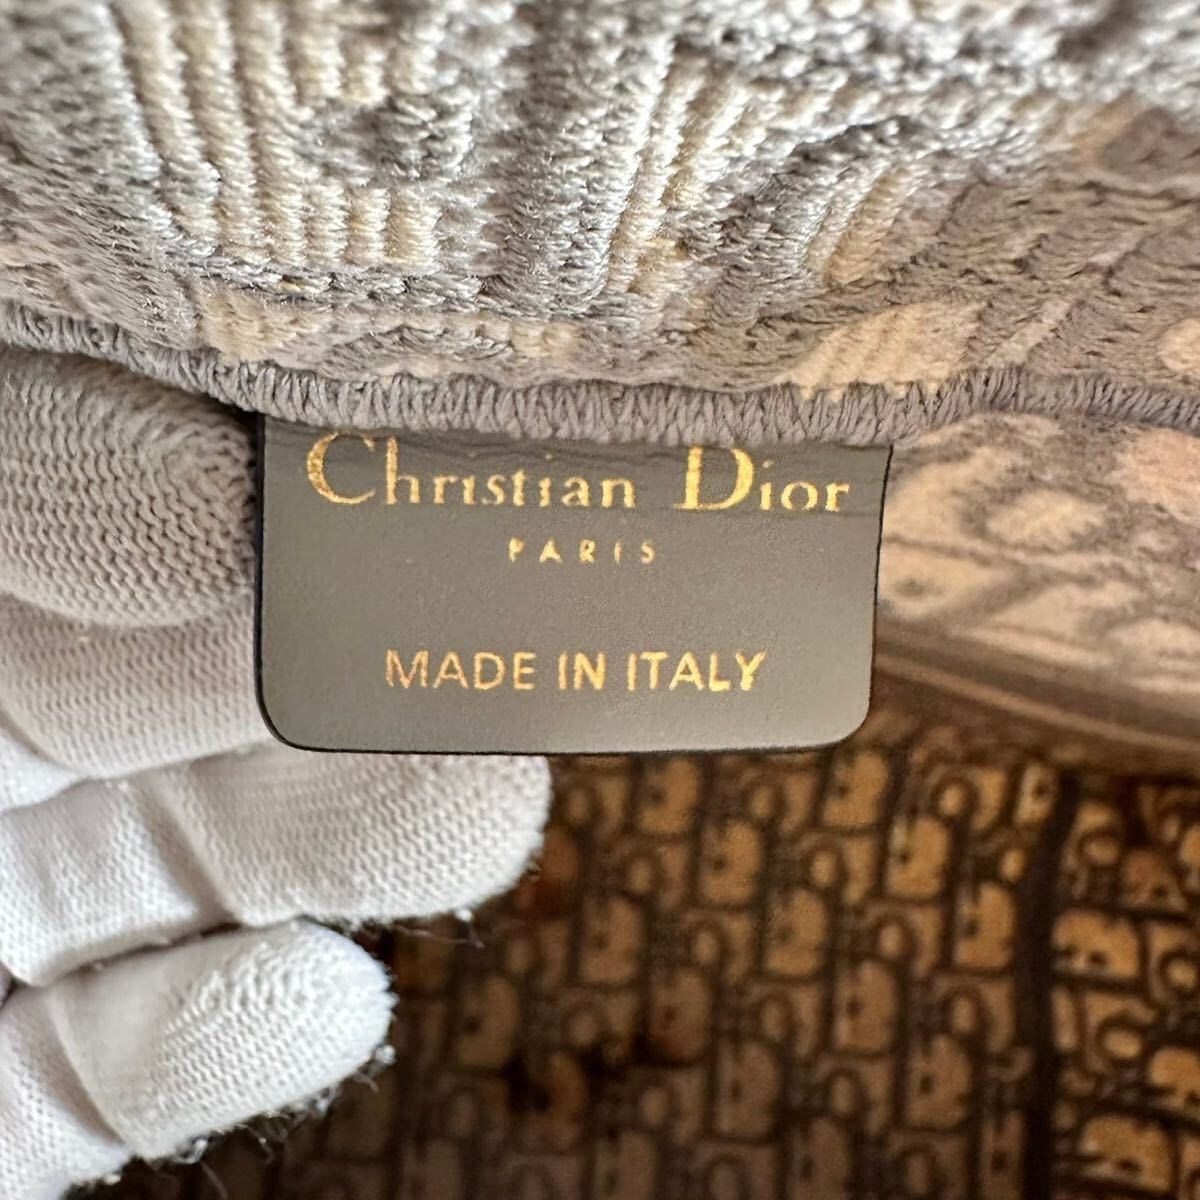  распродажа Christian Dior Dior книжка большая сумка Toro ta- парусина большая сумка 